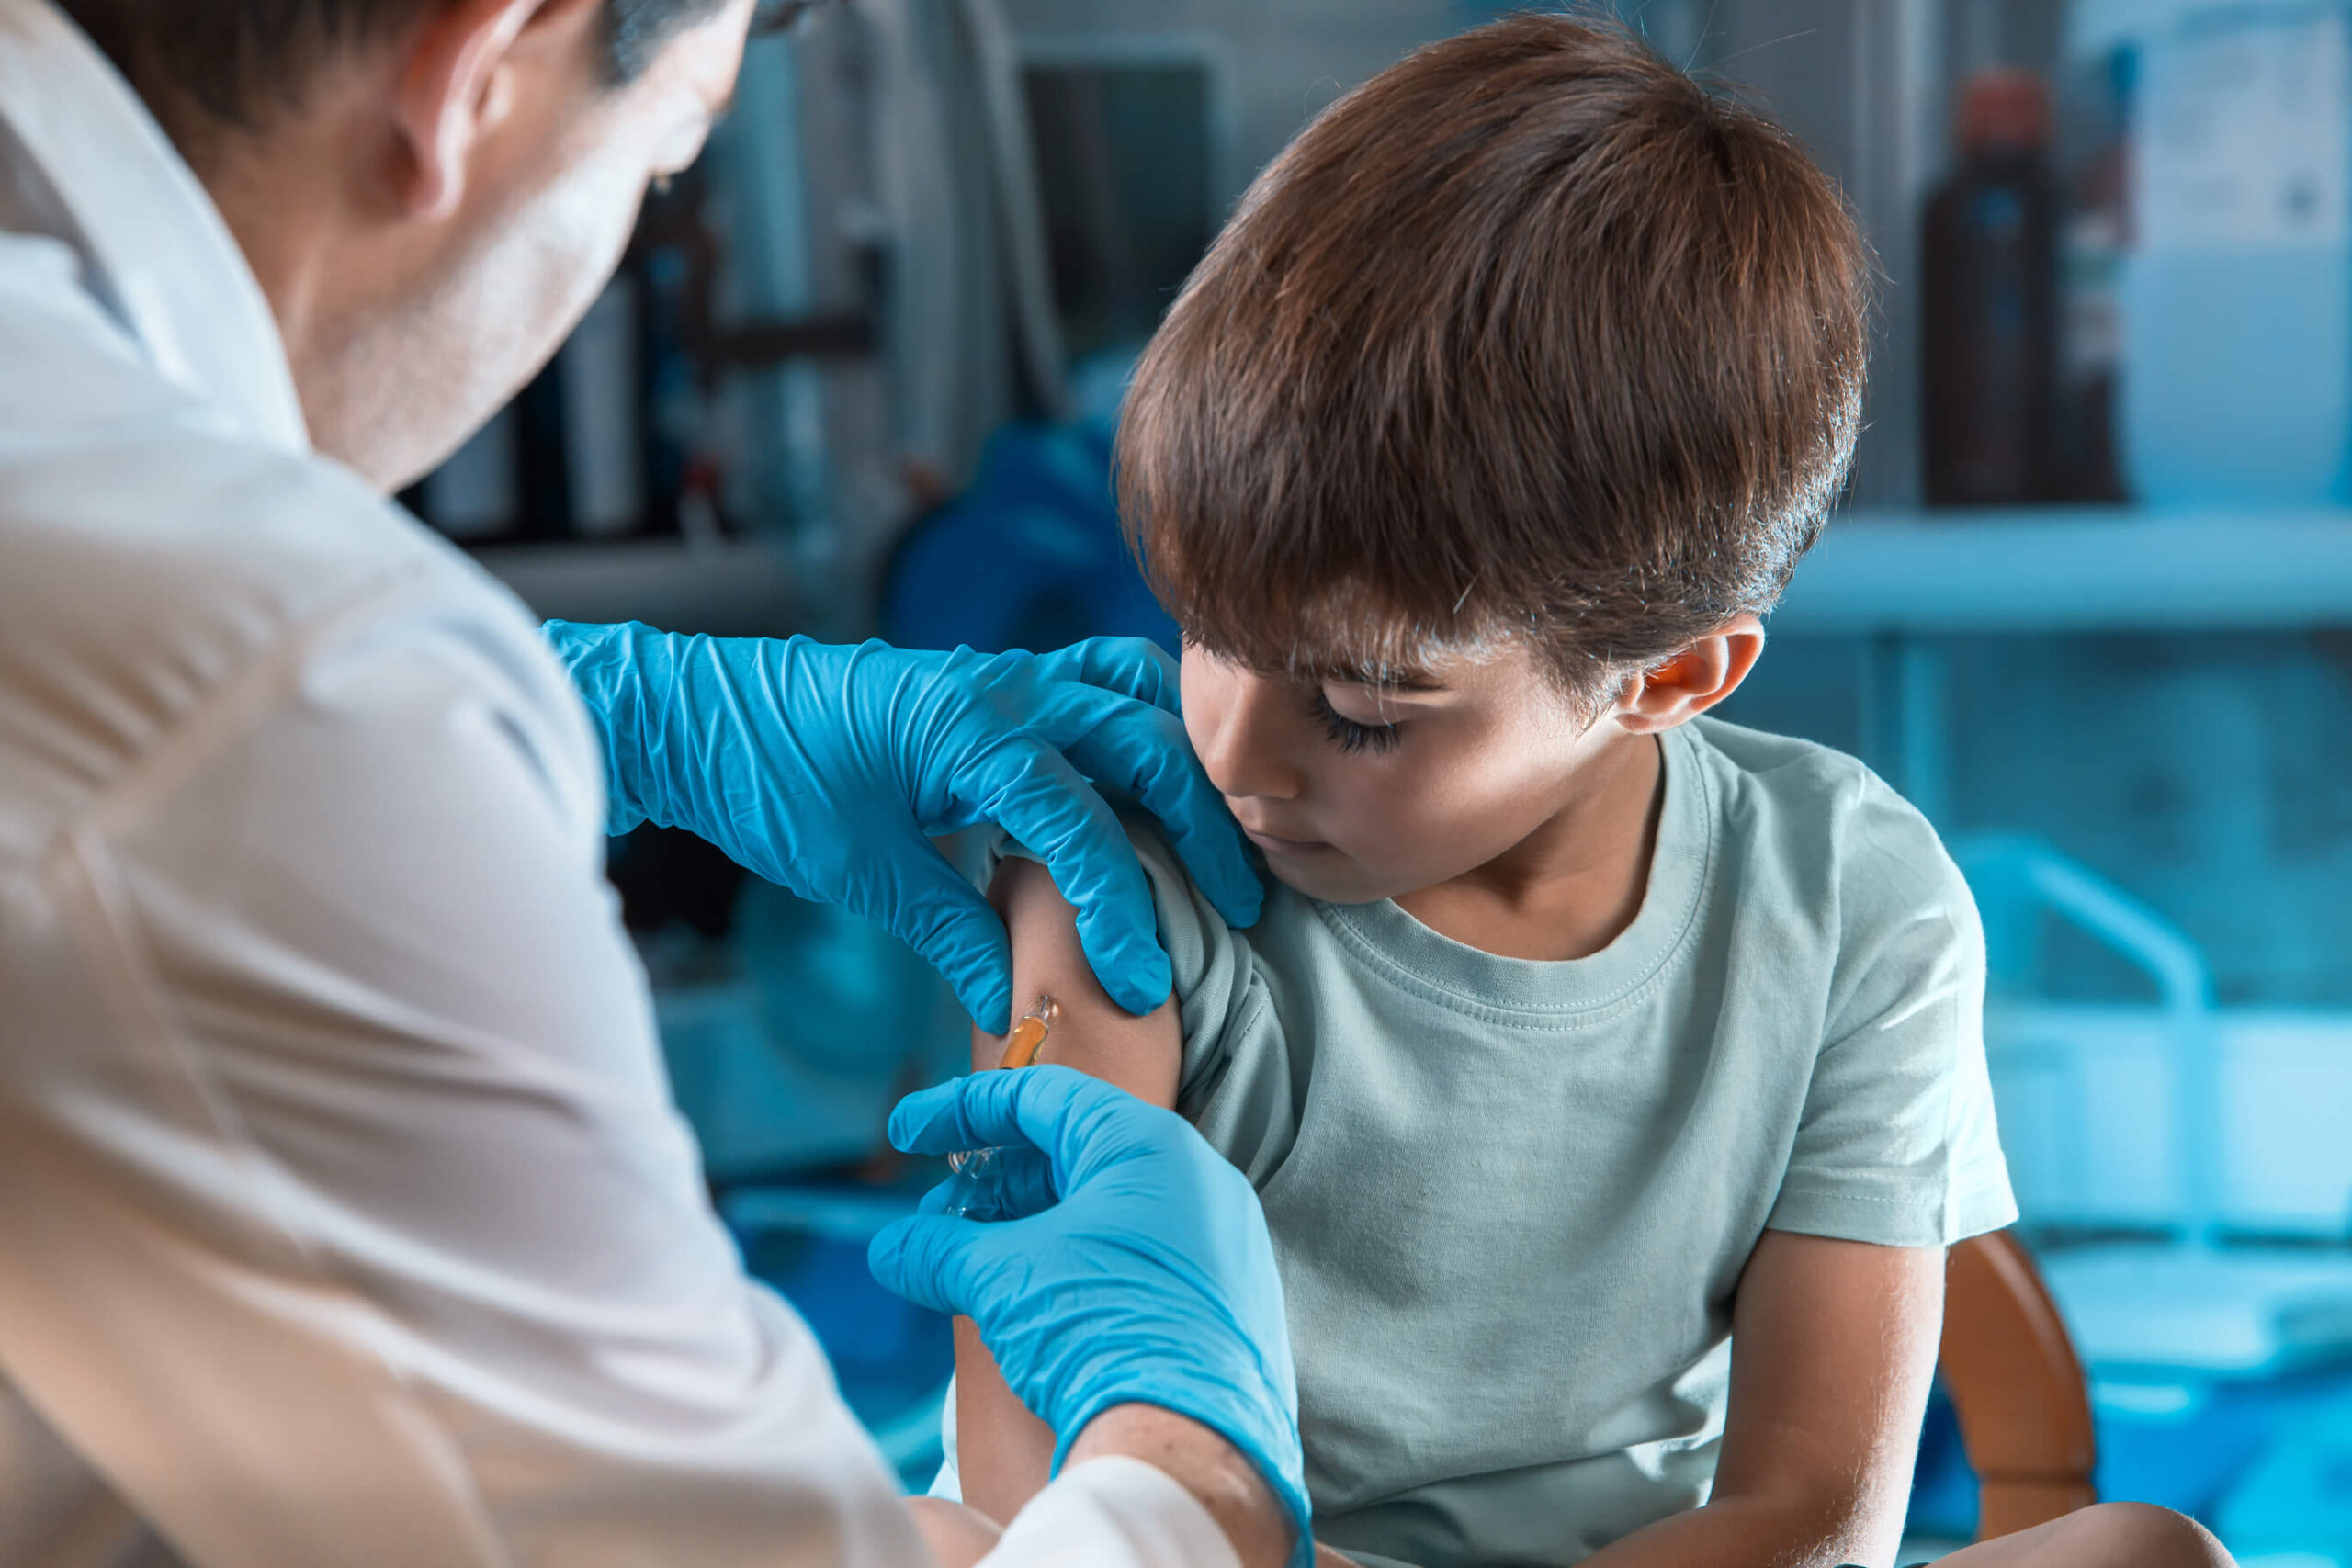 Covid19 pediatric vaccine for children ages 5-11